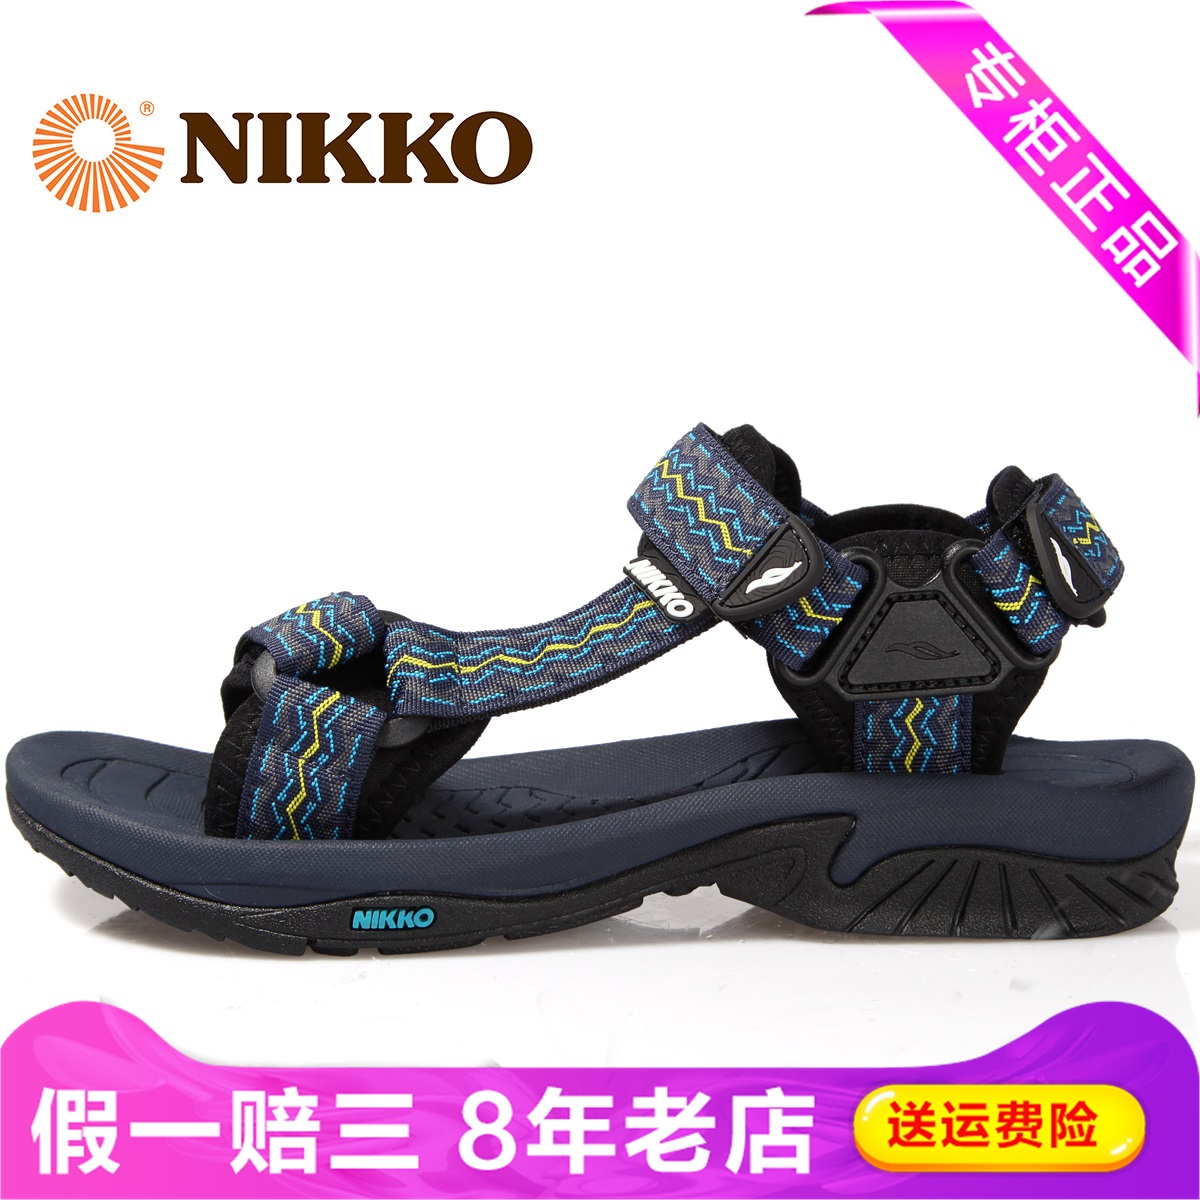 Nikko日高凉鞋减震沙滩男专柜潜水旅游折叠便携沙滩鞋bs-5123001